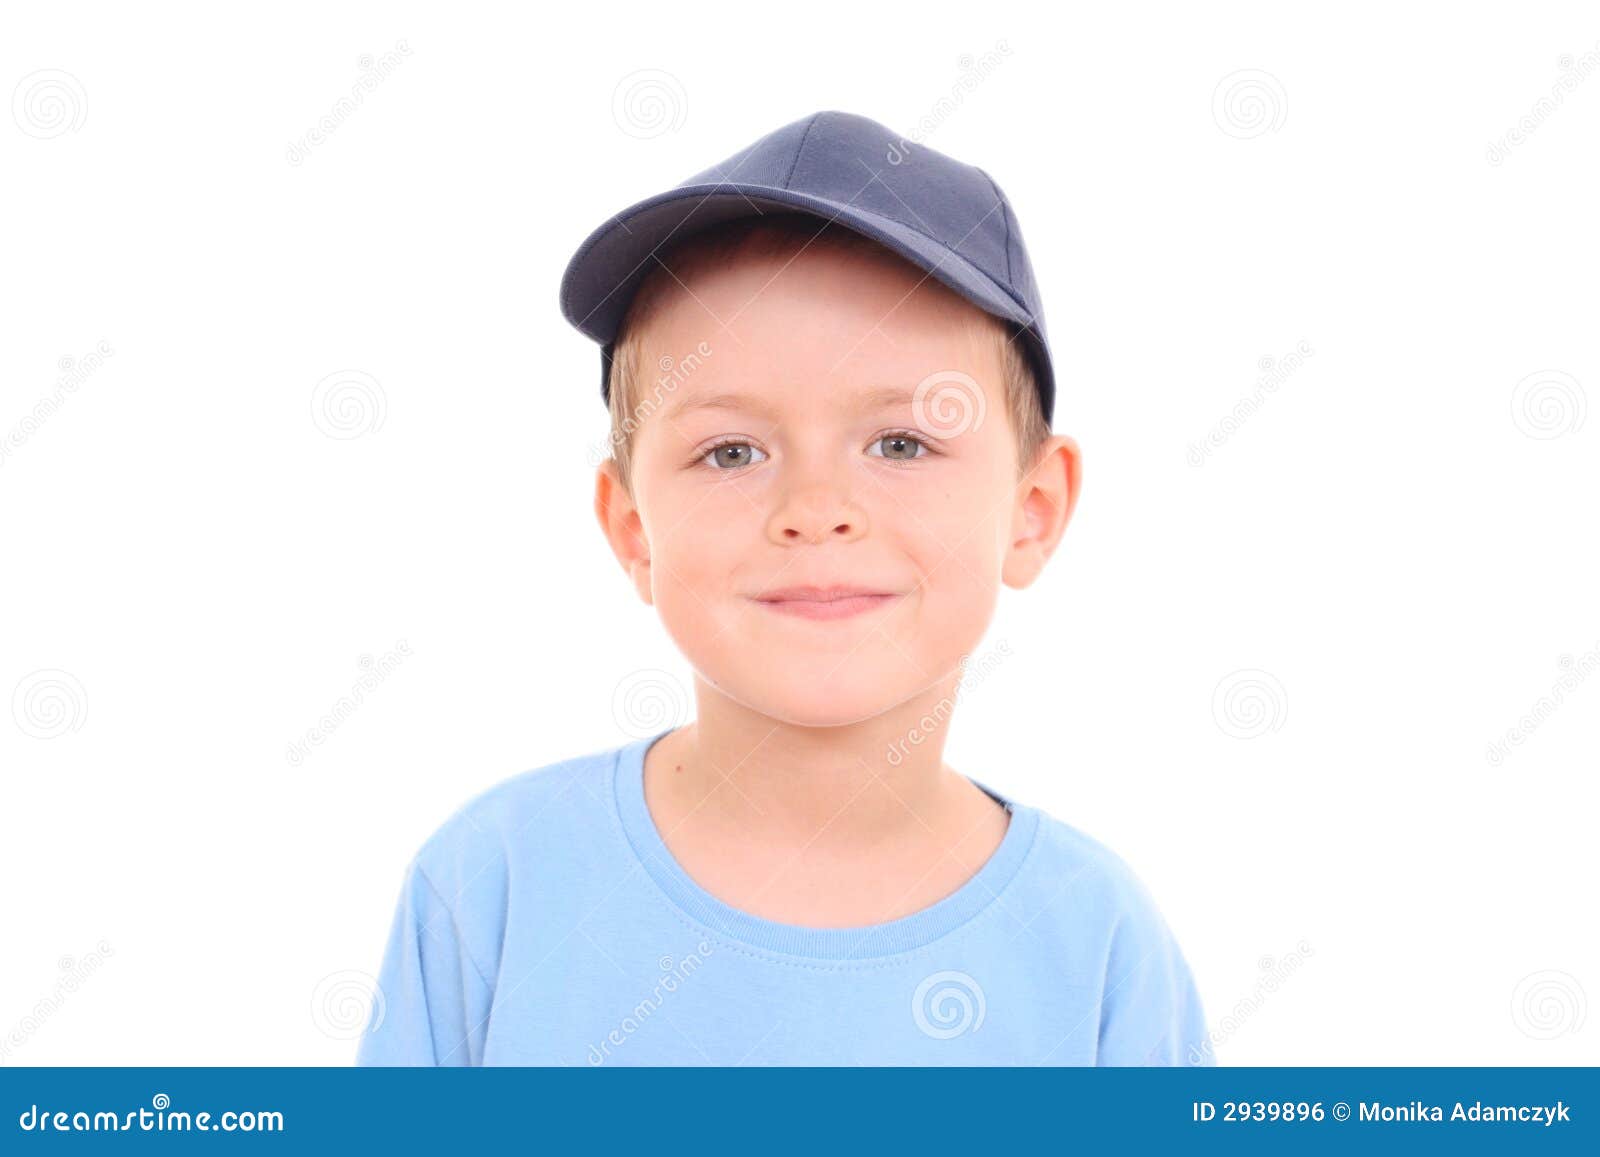 Pamflet Thermisch Handel 6 jaar oude jongens stock foto. Image of leuk, glimlach - 2939896